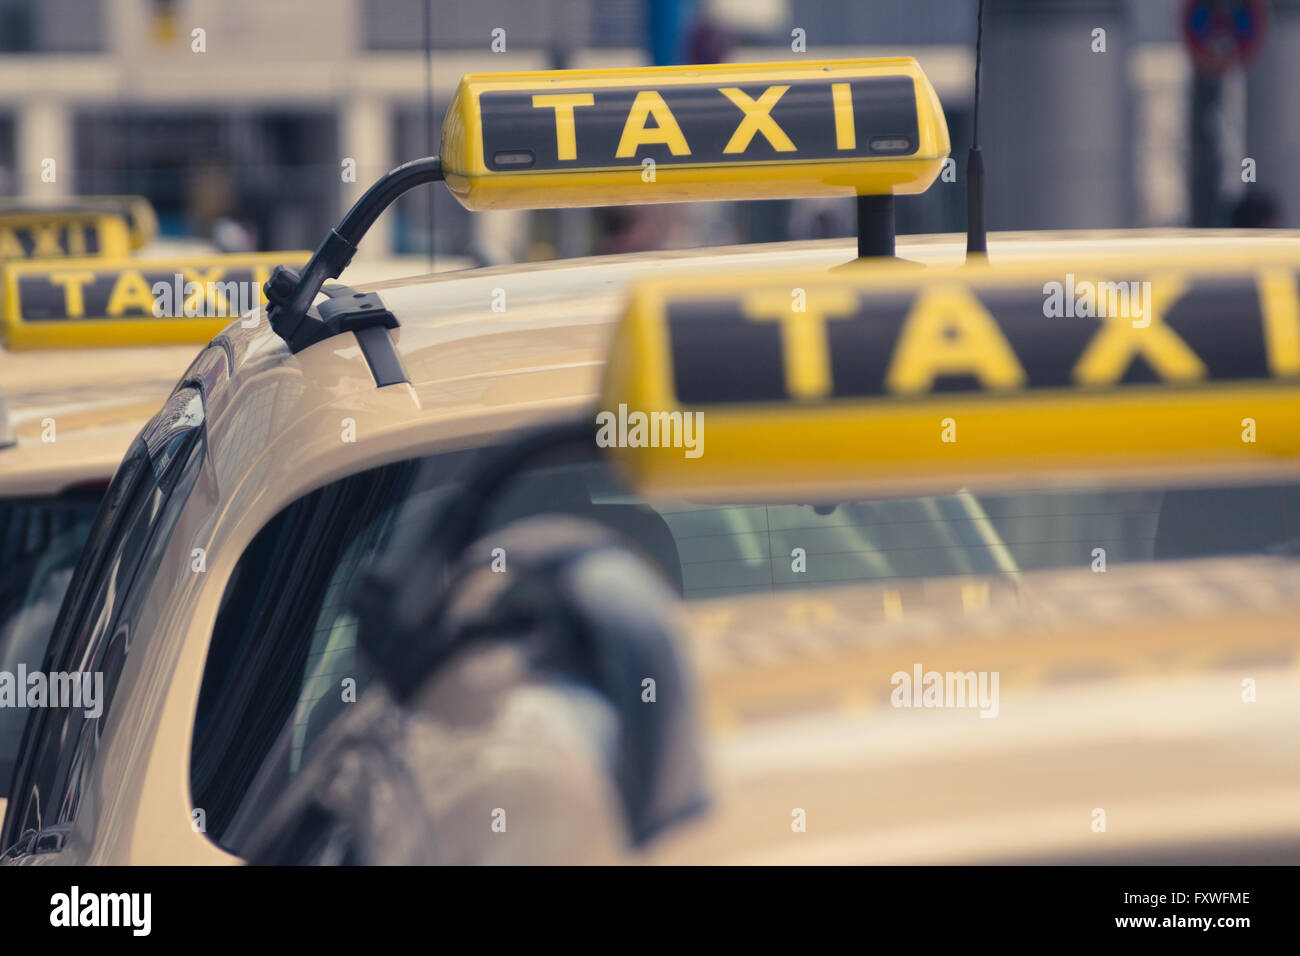 Les voitures de taxi attendent en ligne - signes dans la file d'attente de taxi Banque D'Images